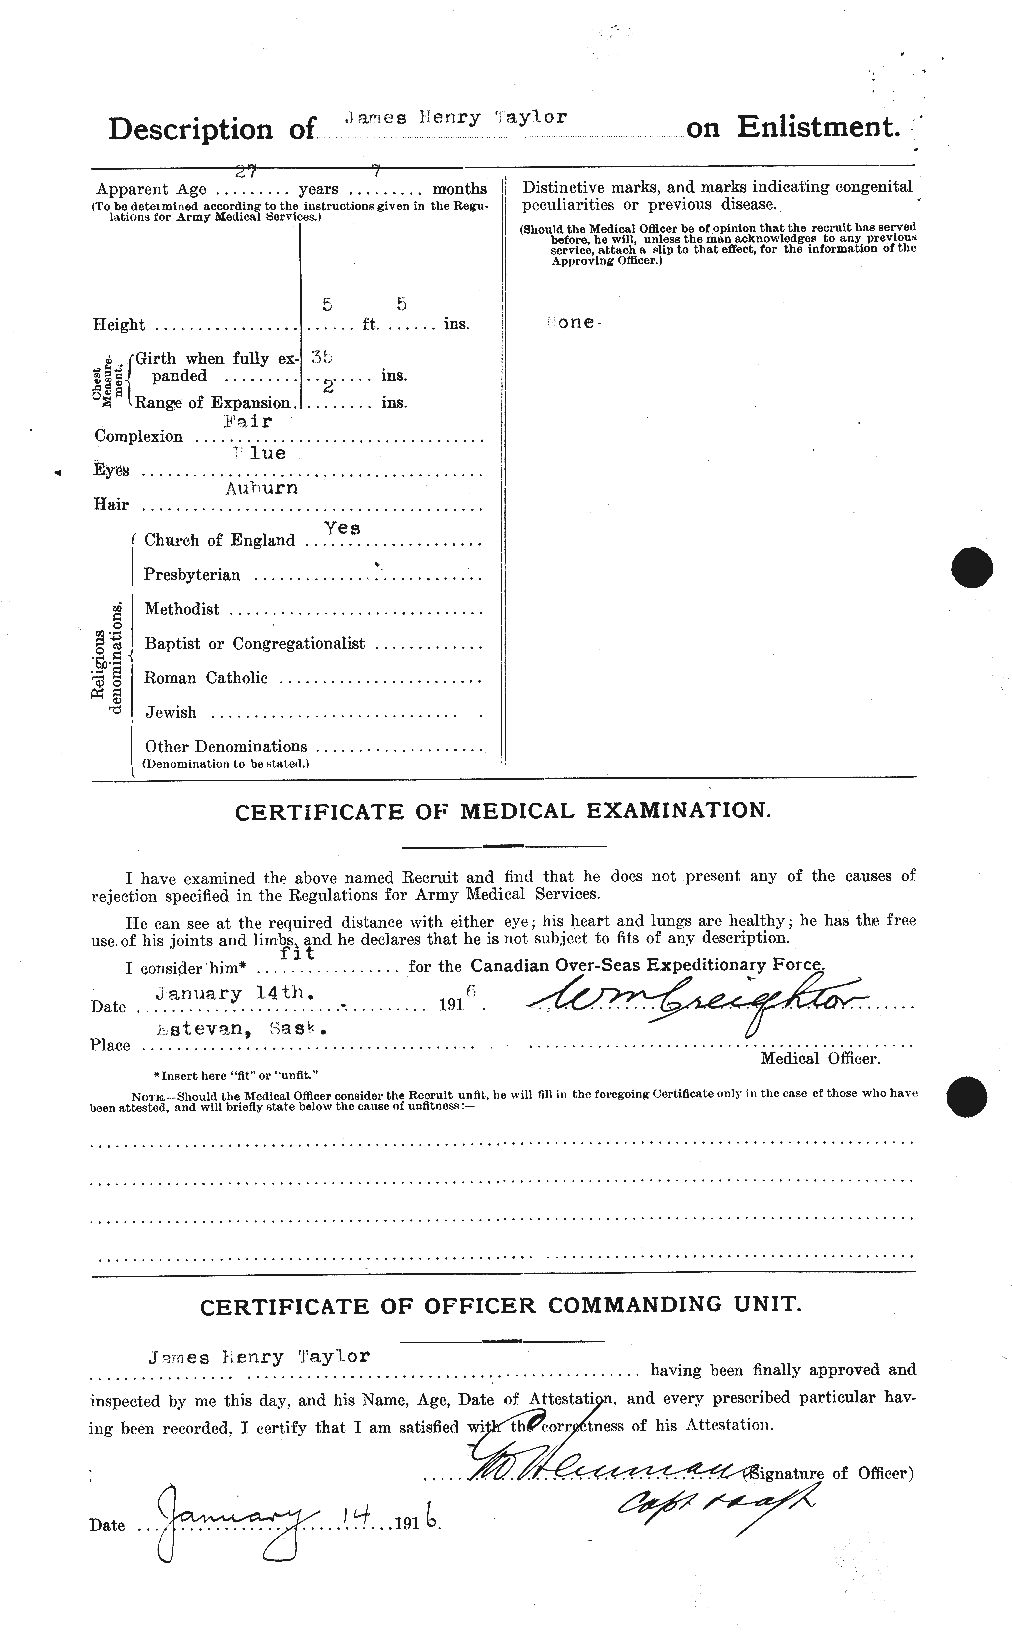 Dossiers du Personnel de la Première Guerre mondiale - CEC 626929b